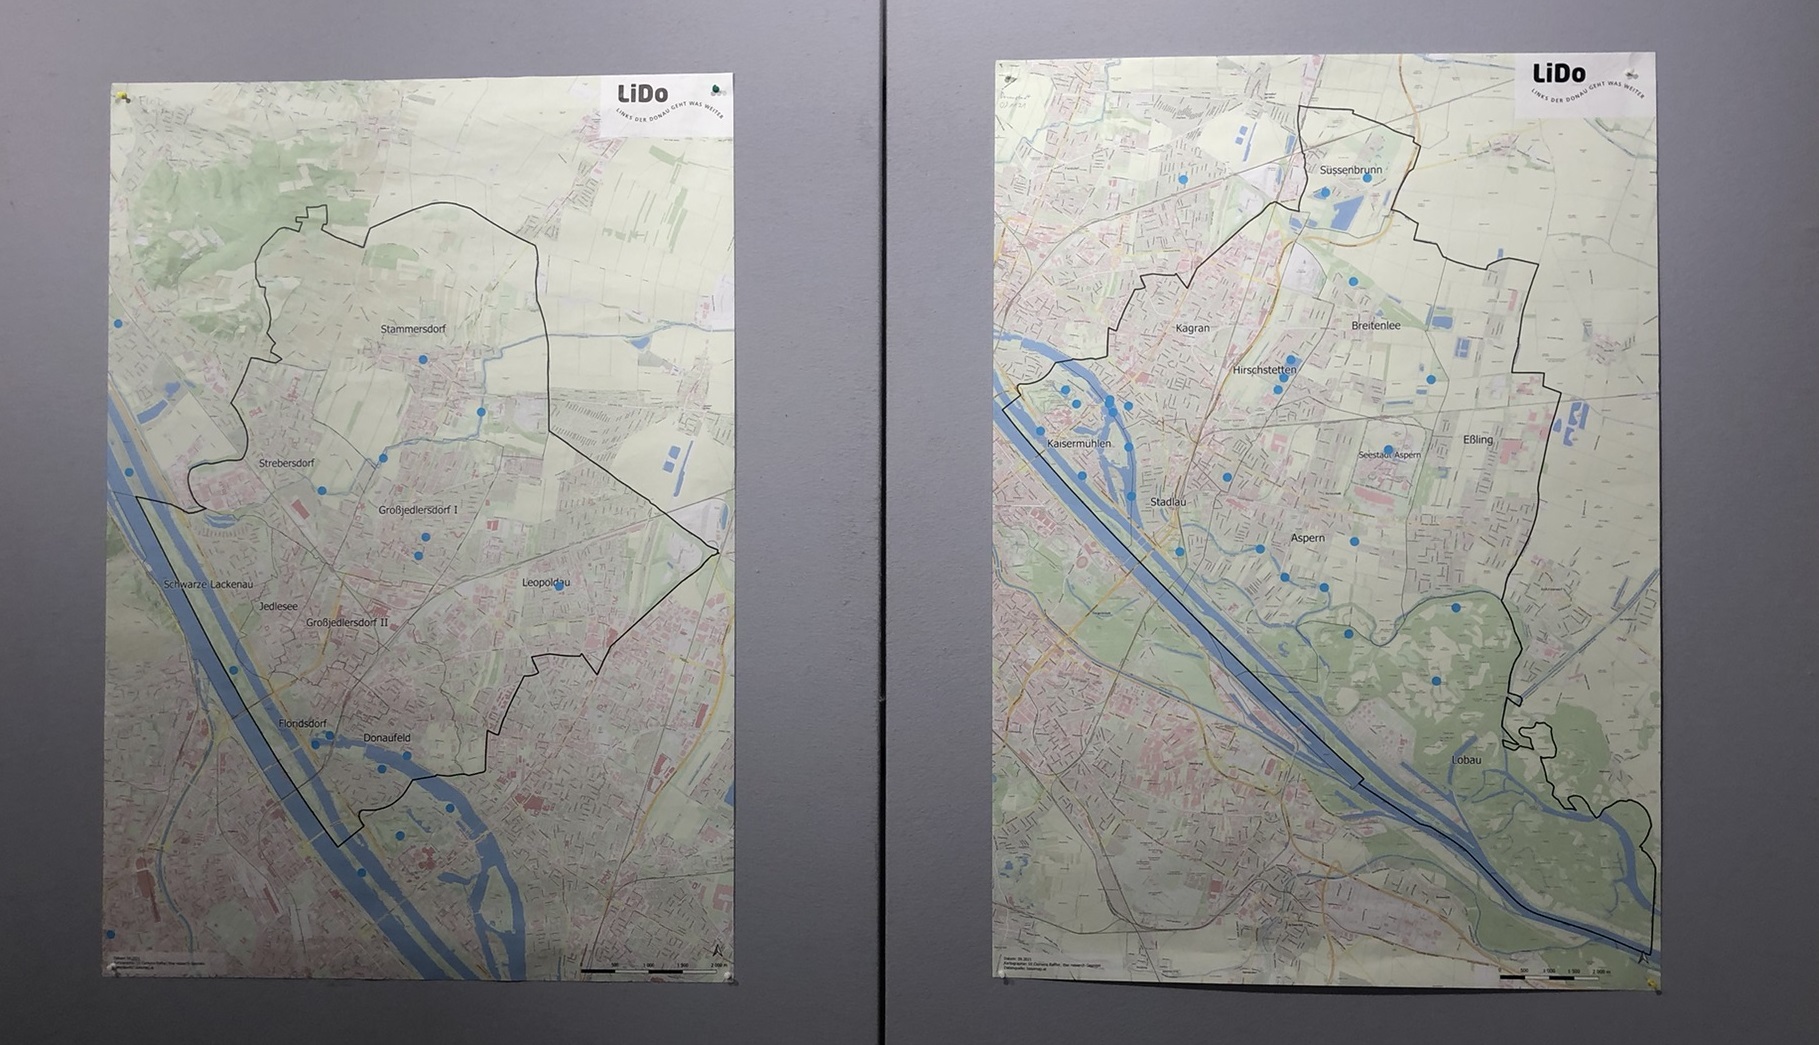 Die beiden Karten zeigen die liebsten Orte zum Spazieren in LiDo 